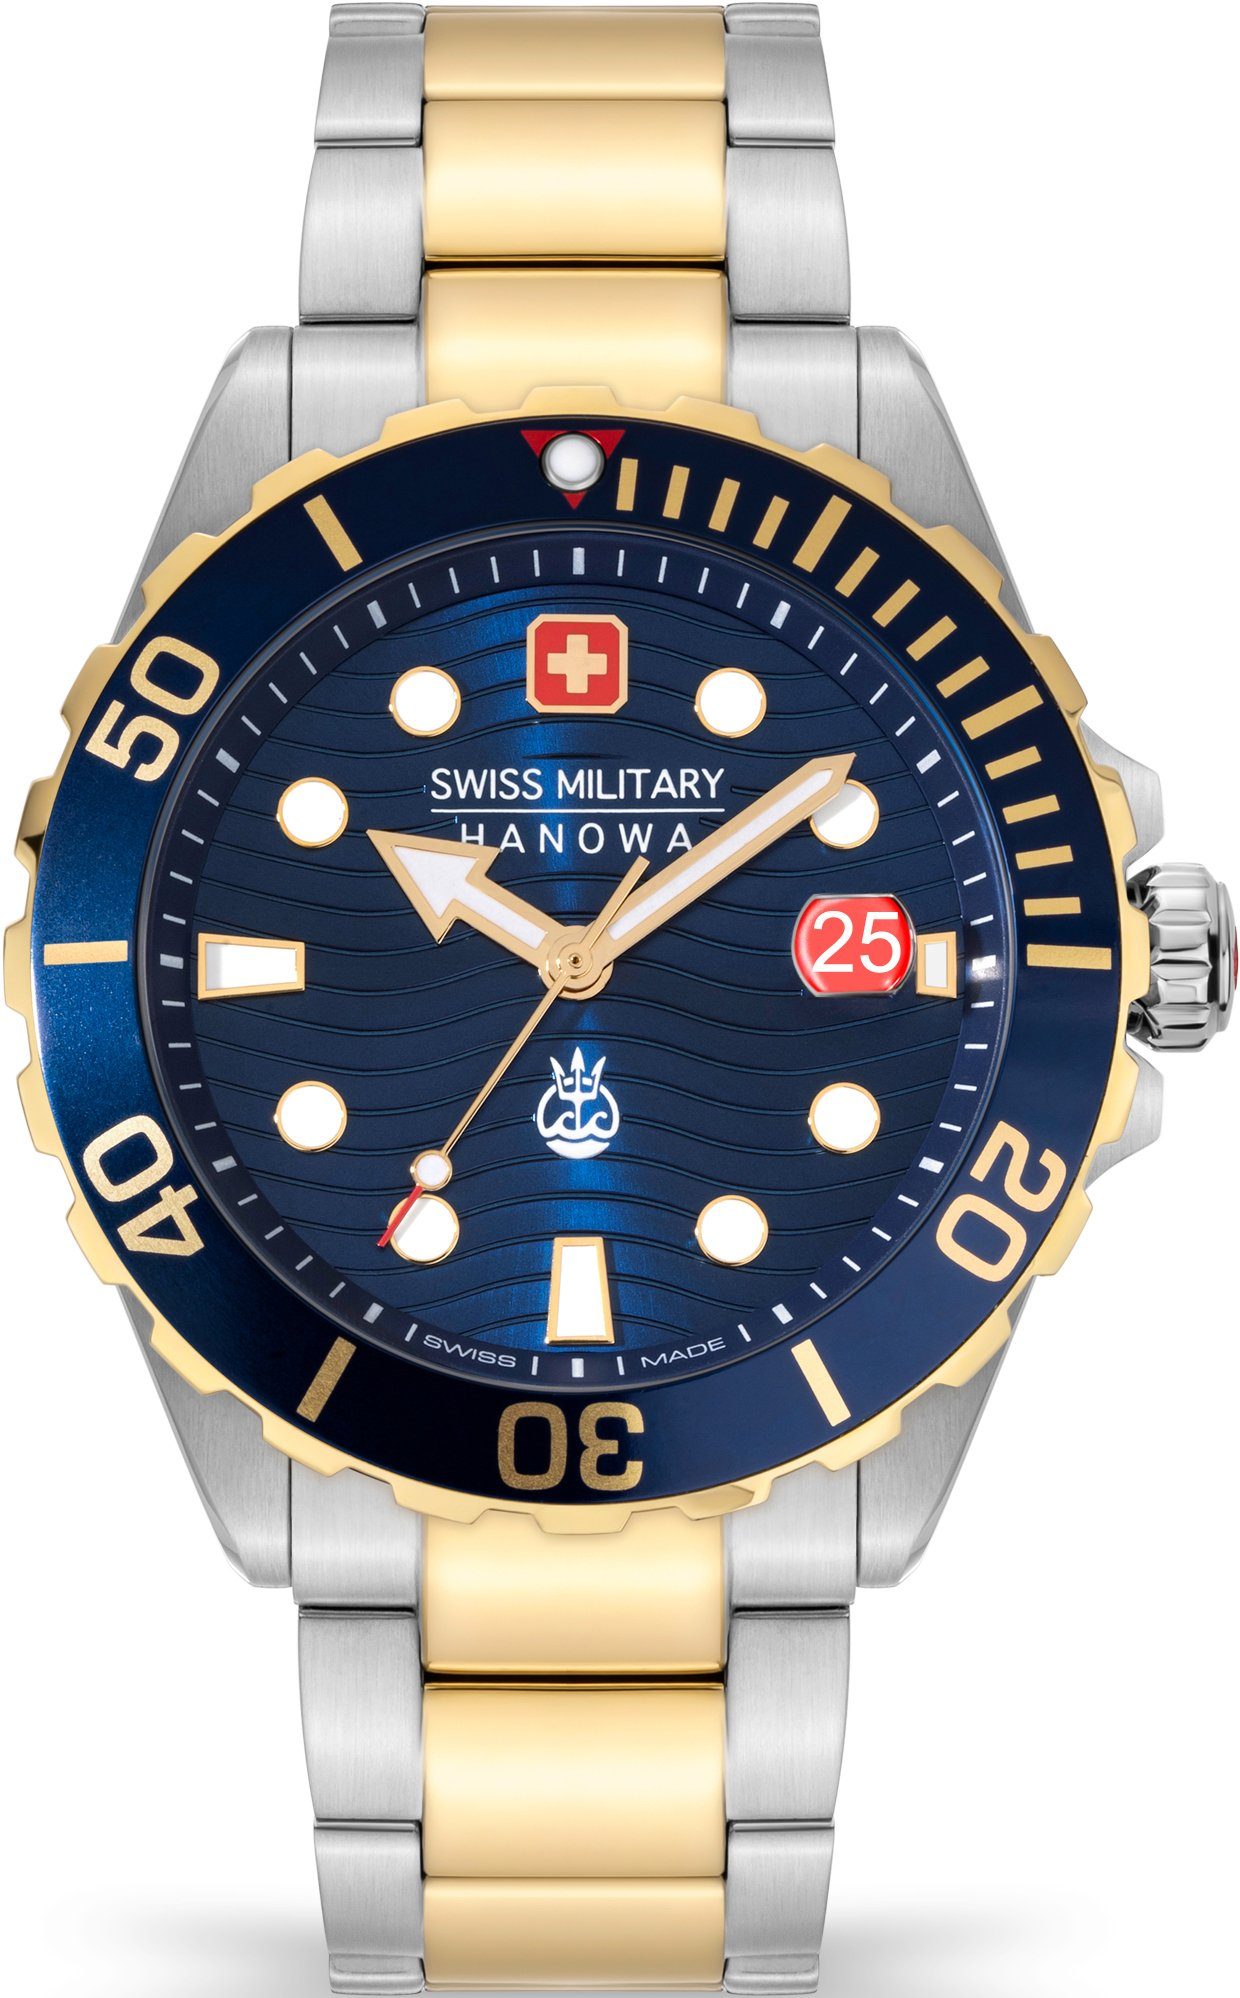 Schweizer SMWGH2200360 Swiss II, Uhr Hanowa Military Blau OFFSHORE DIVER